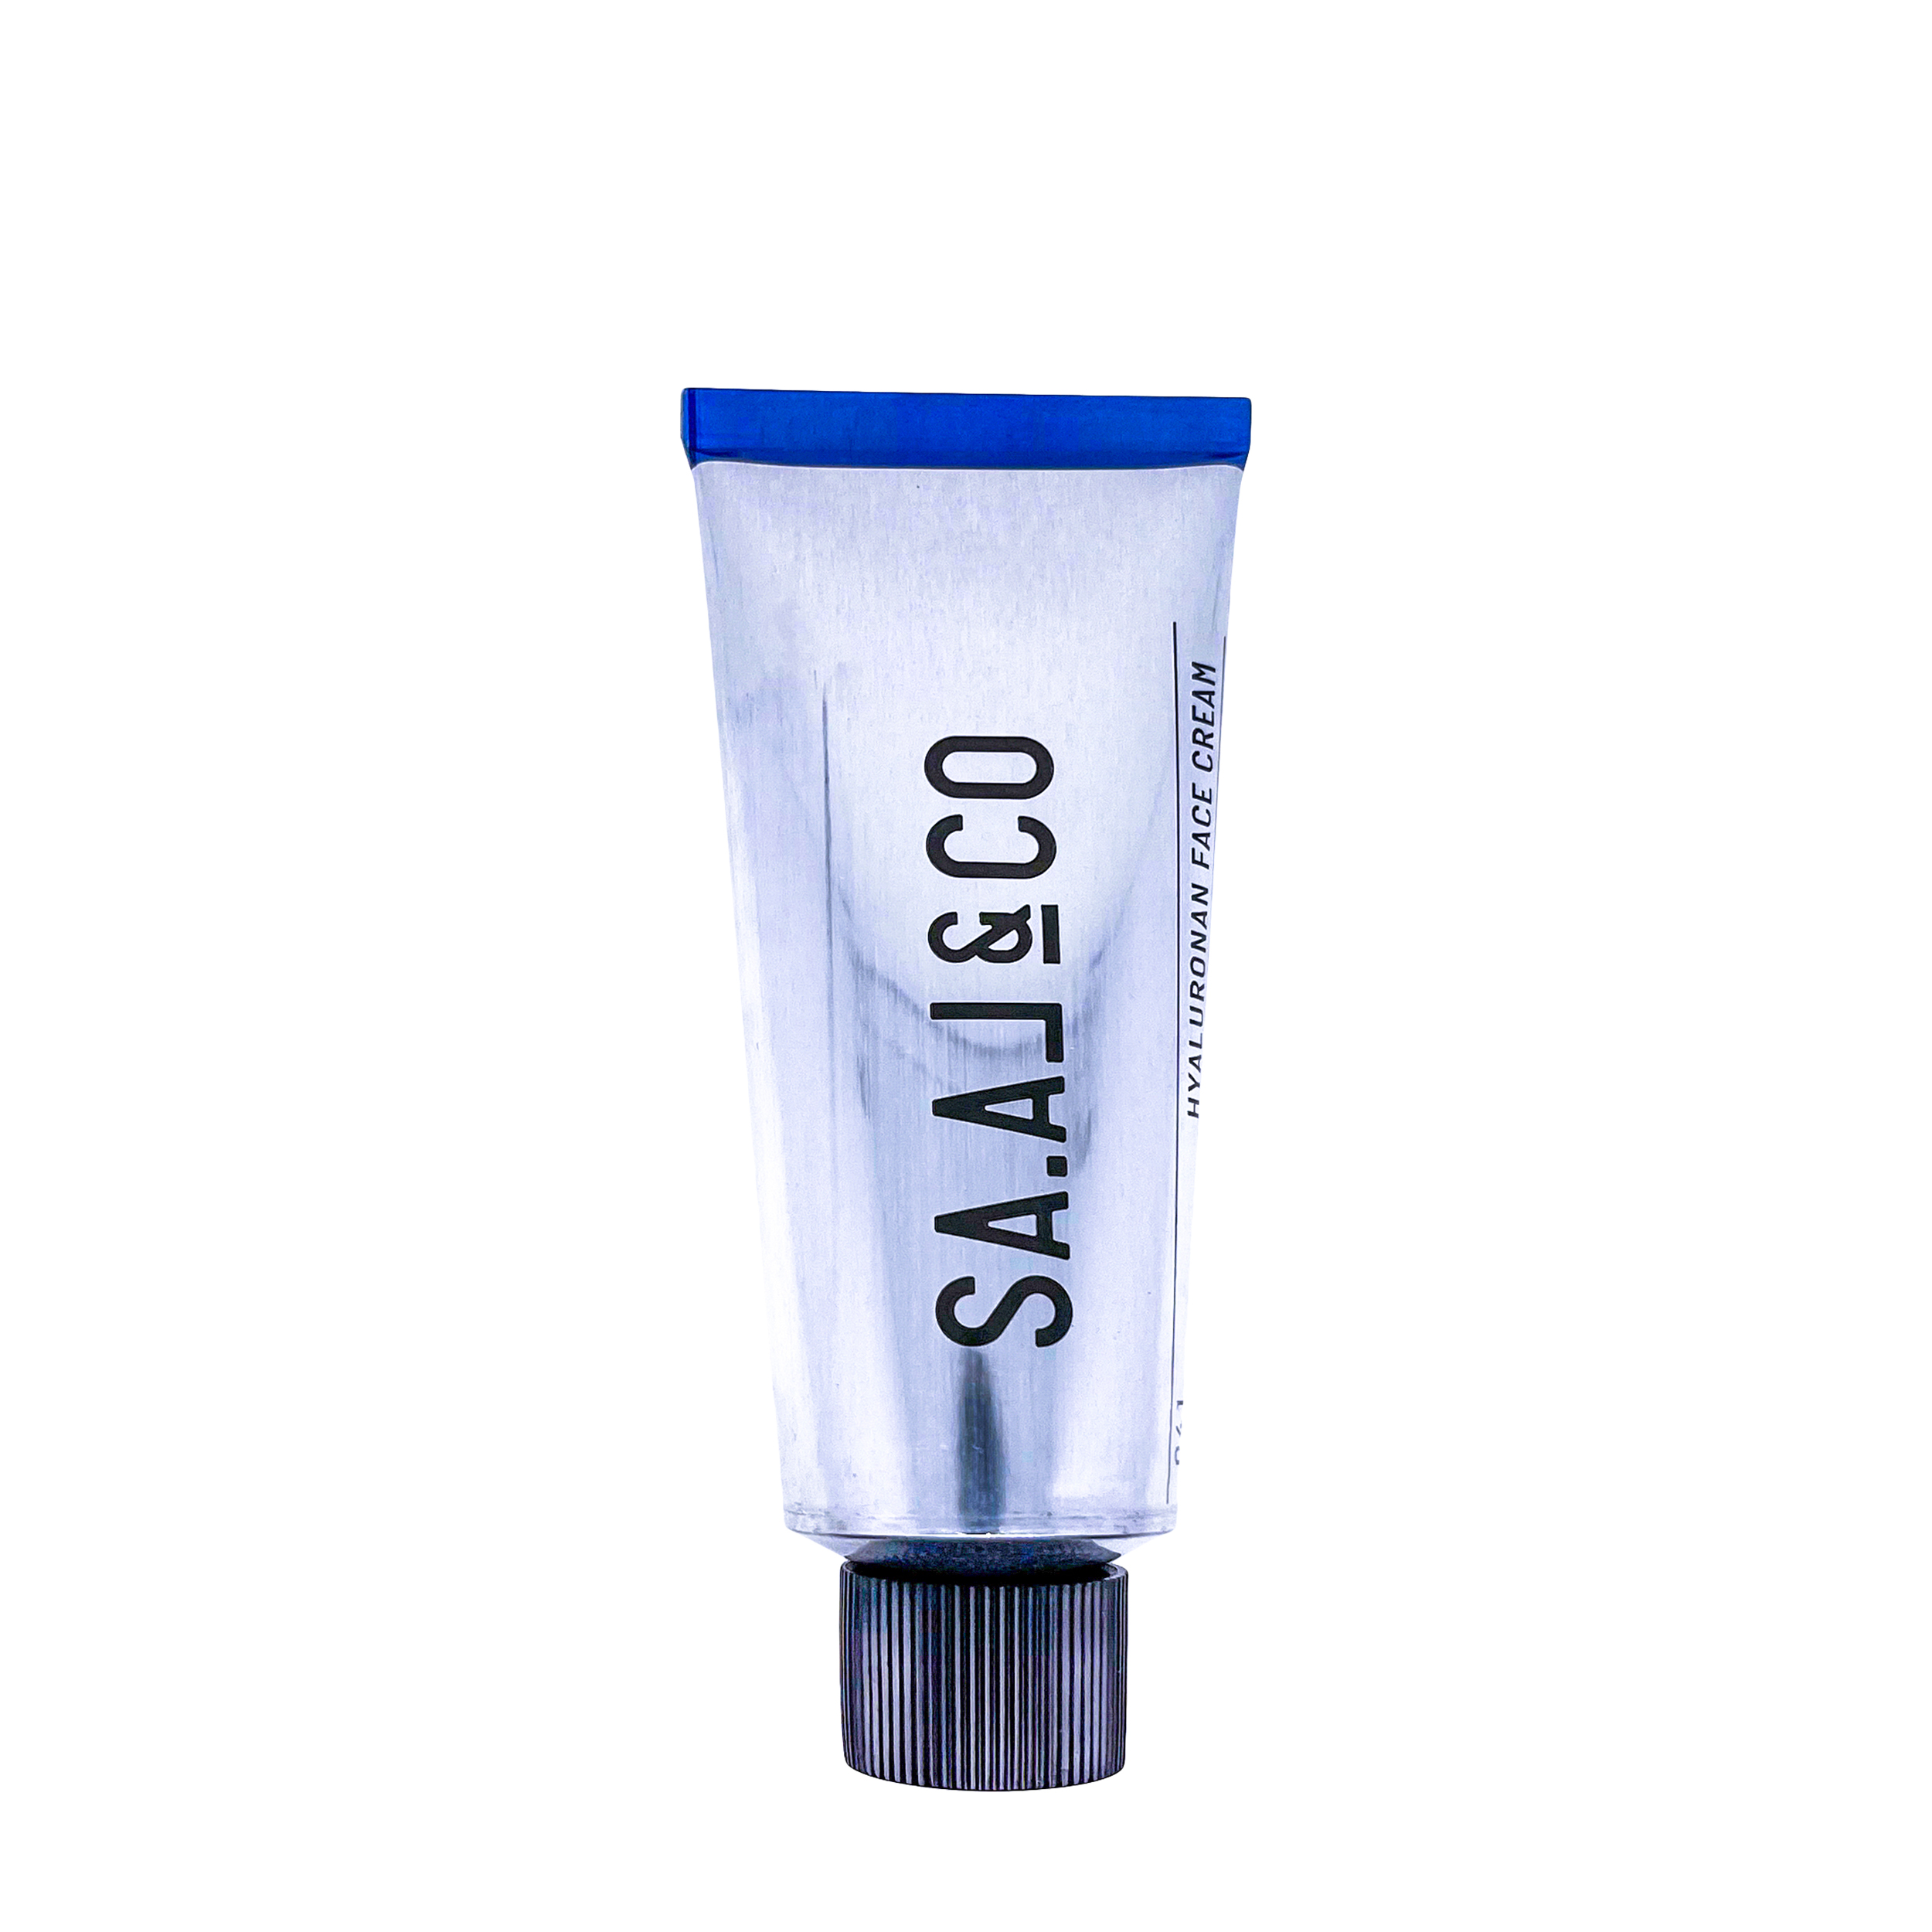 SA.AL&CO SA.AL&CO 041 Hyaluronan Face Cream 100 ml - увлажняющий крем для лица с гиалуроновой кислотой 100 мл